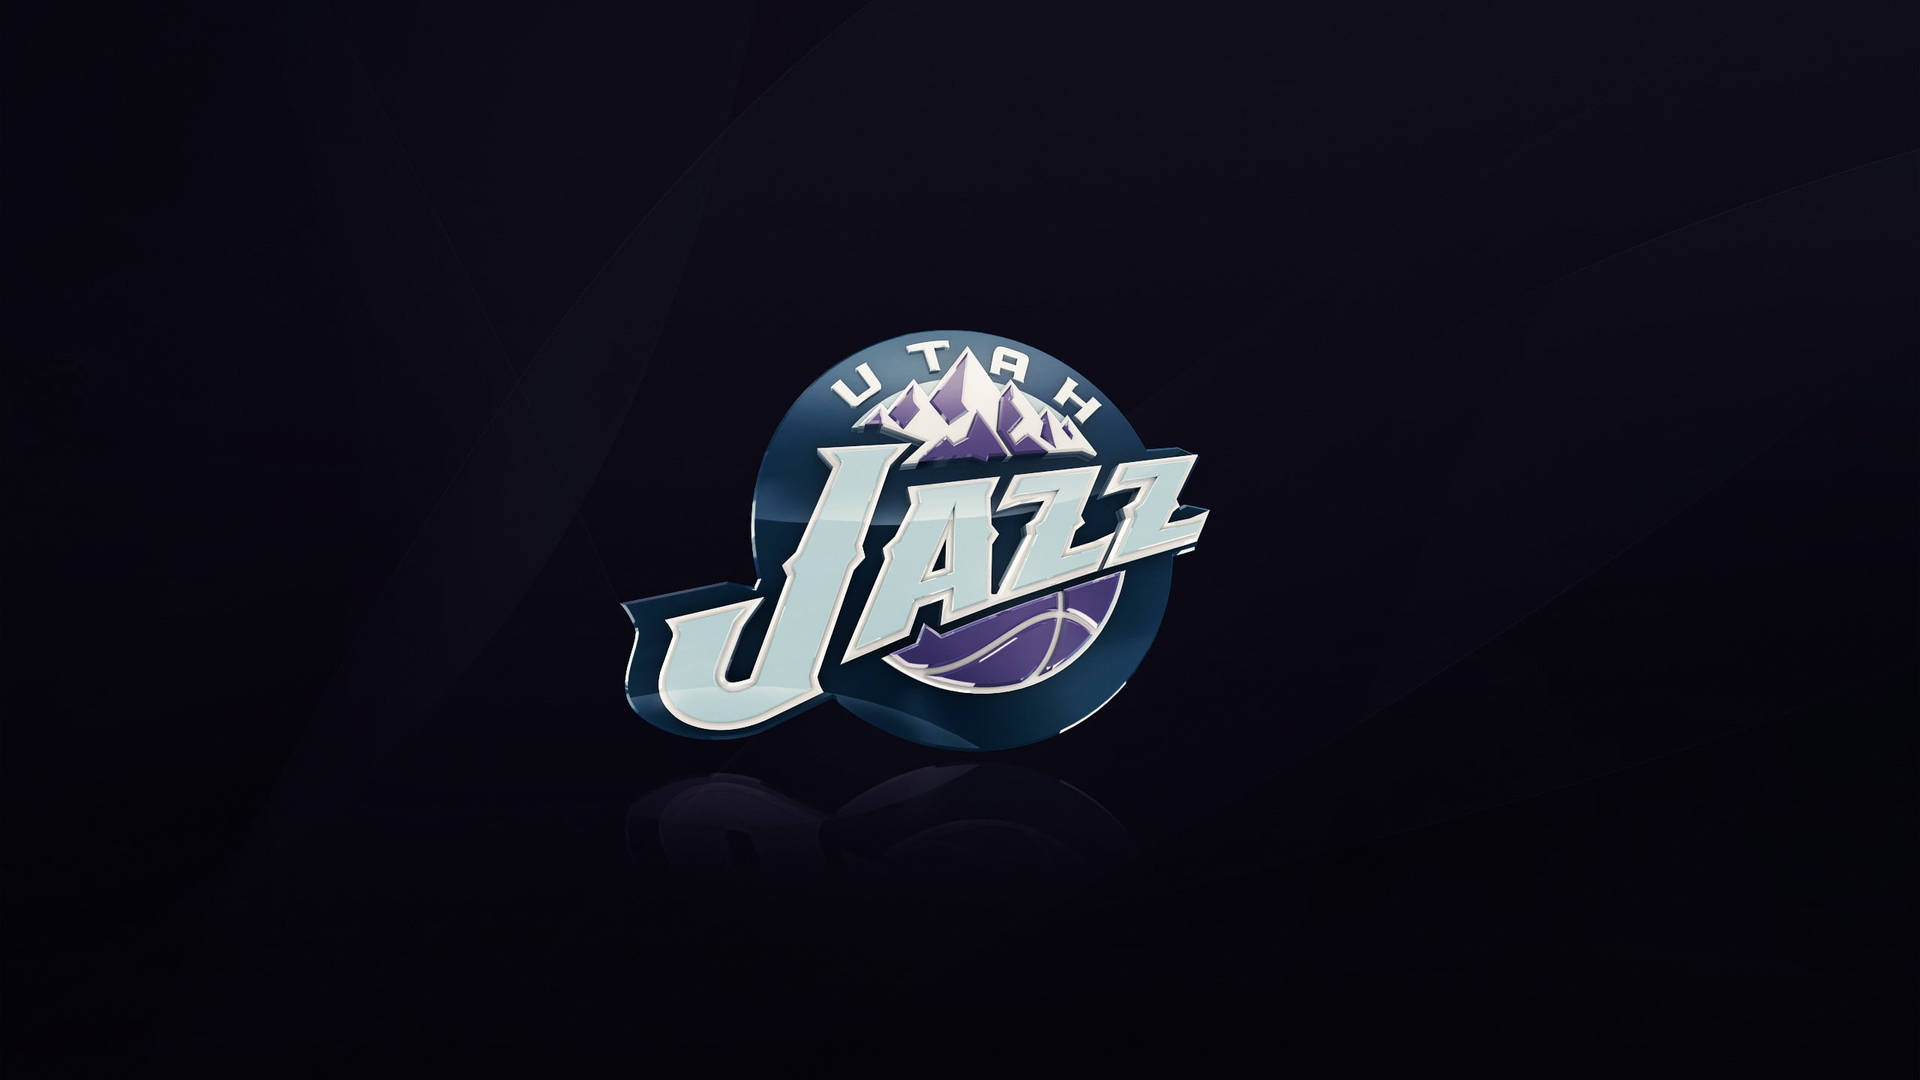 Utah Jazz Background Wallpaper